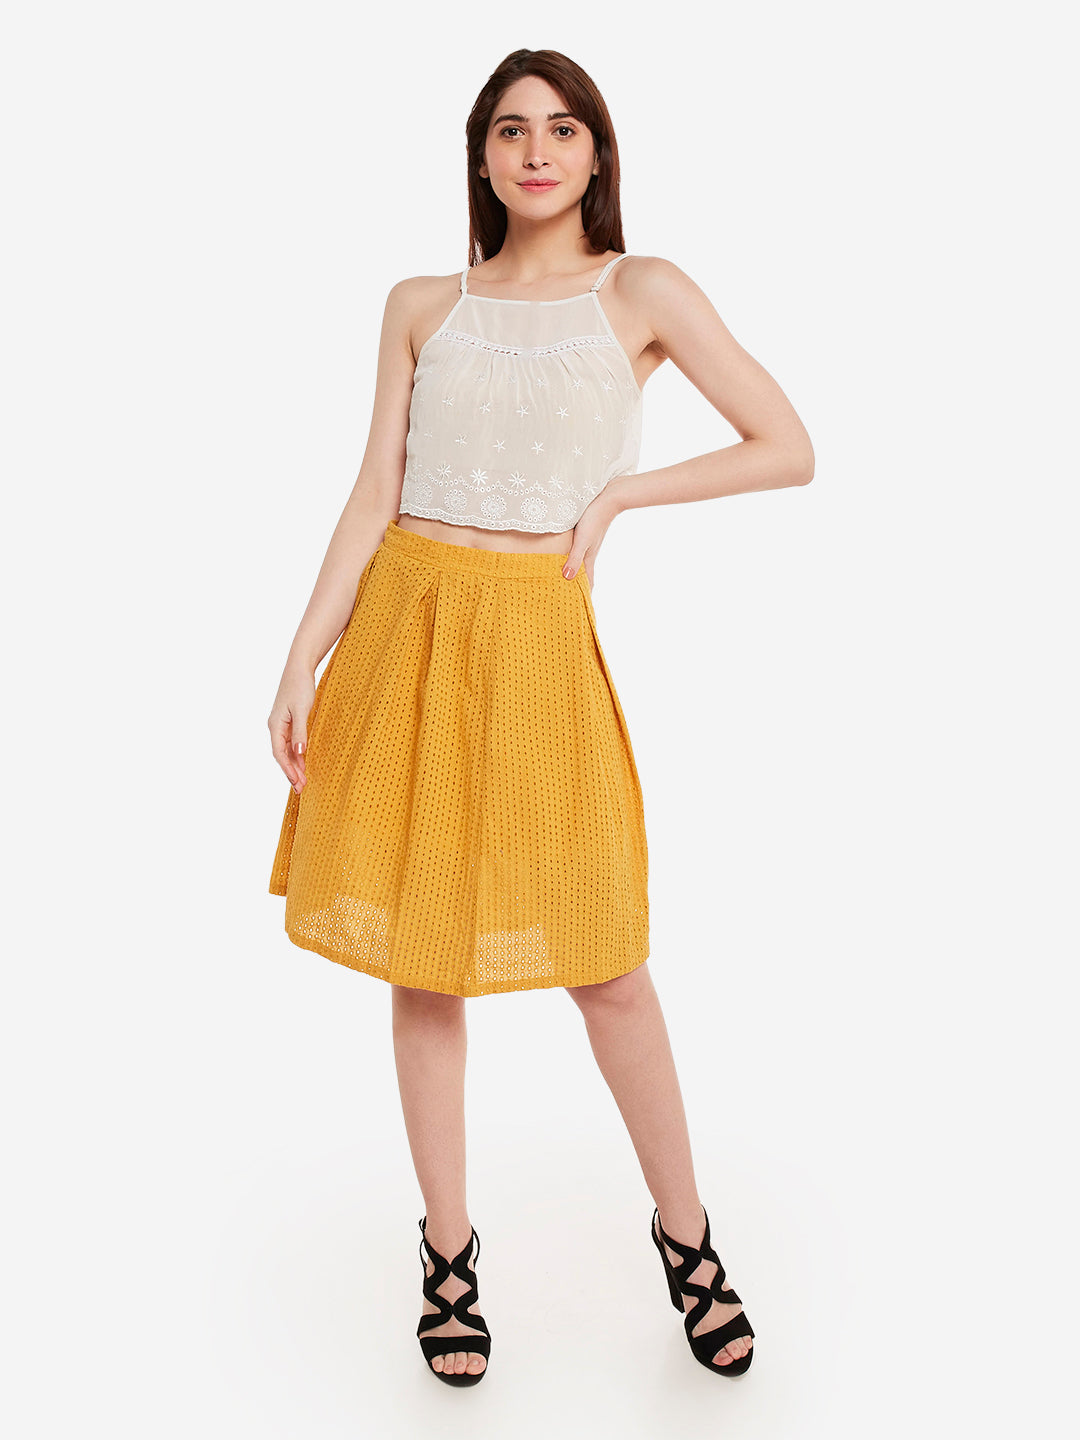 Summer Chifley Cotton Skirt